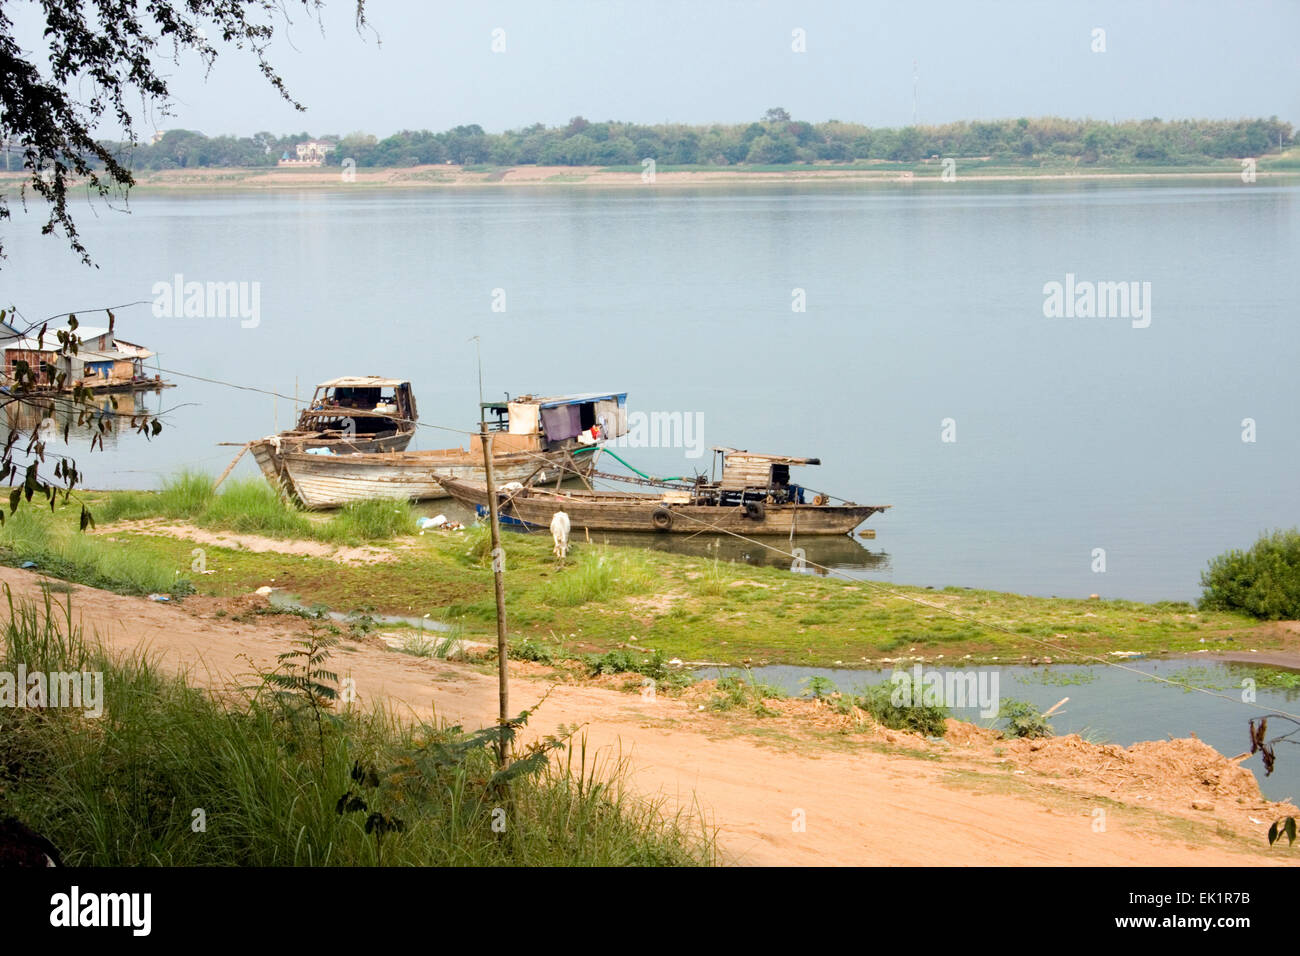 Bateaux en bois sont amarrés le long des rives du Mékong dans la région de Kampong Cham, au Cambodge. Banque D'Images